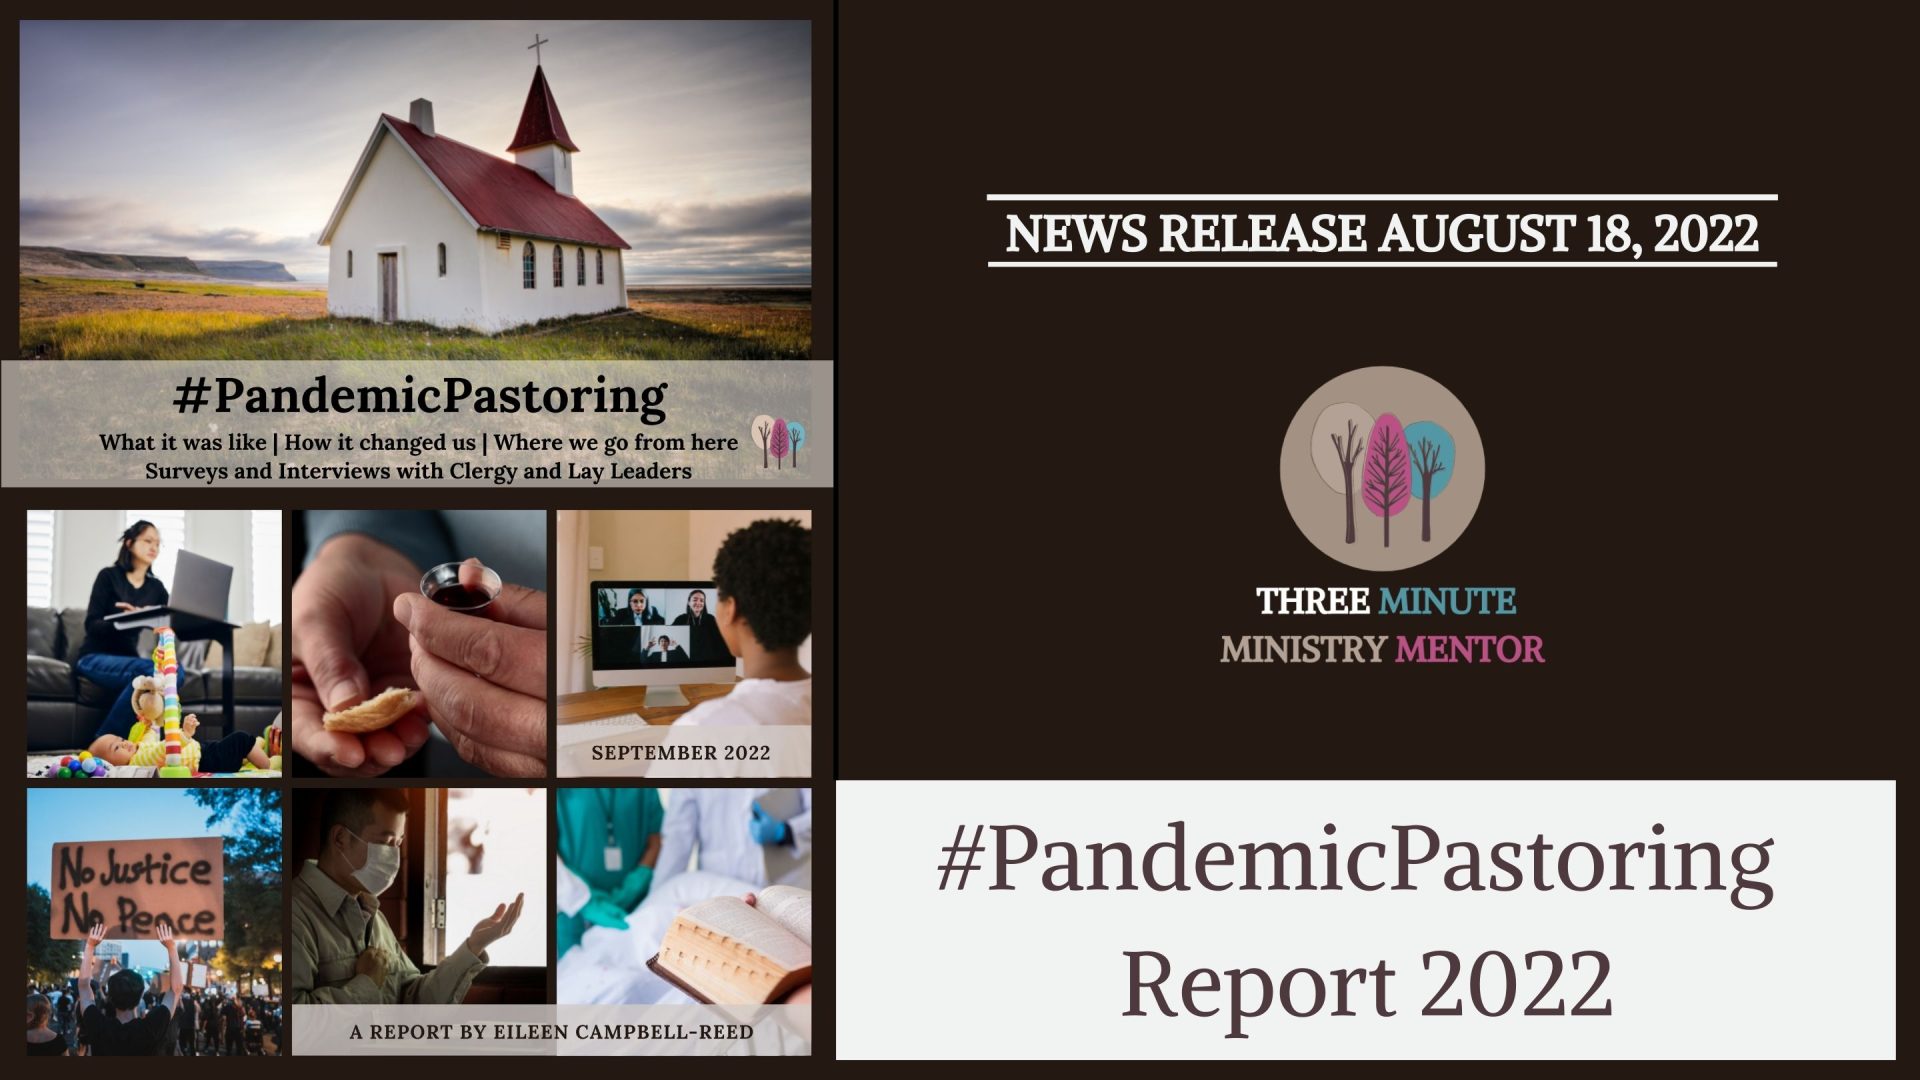 #PandemicPastoring Report